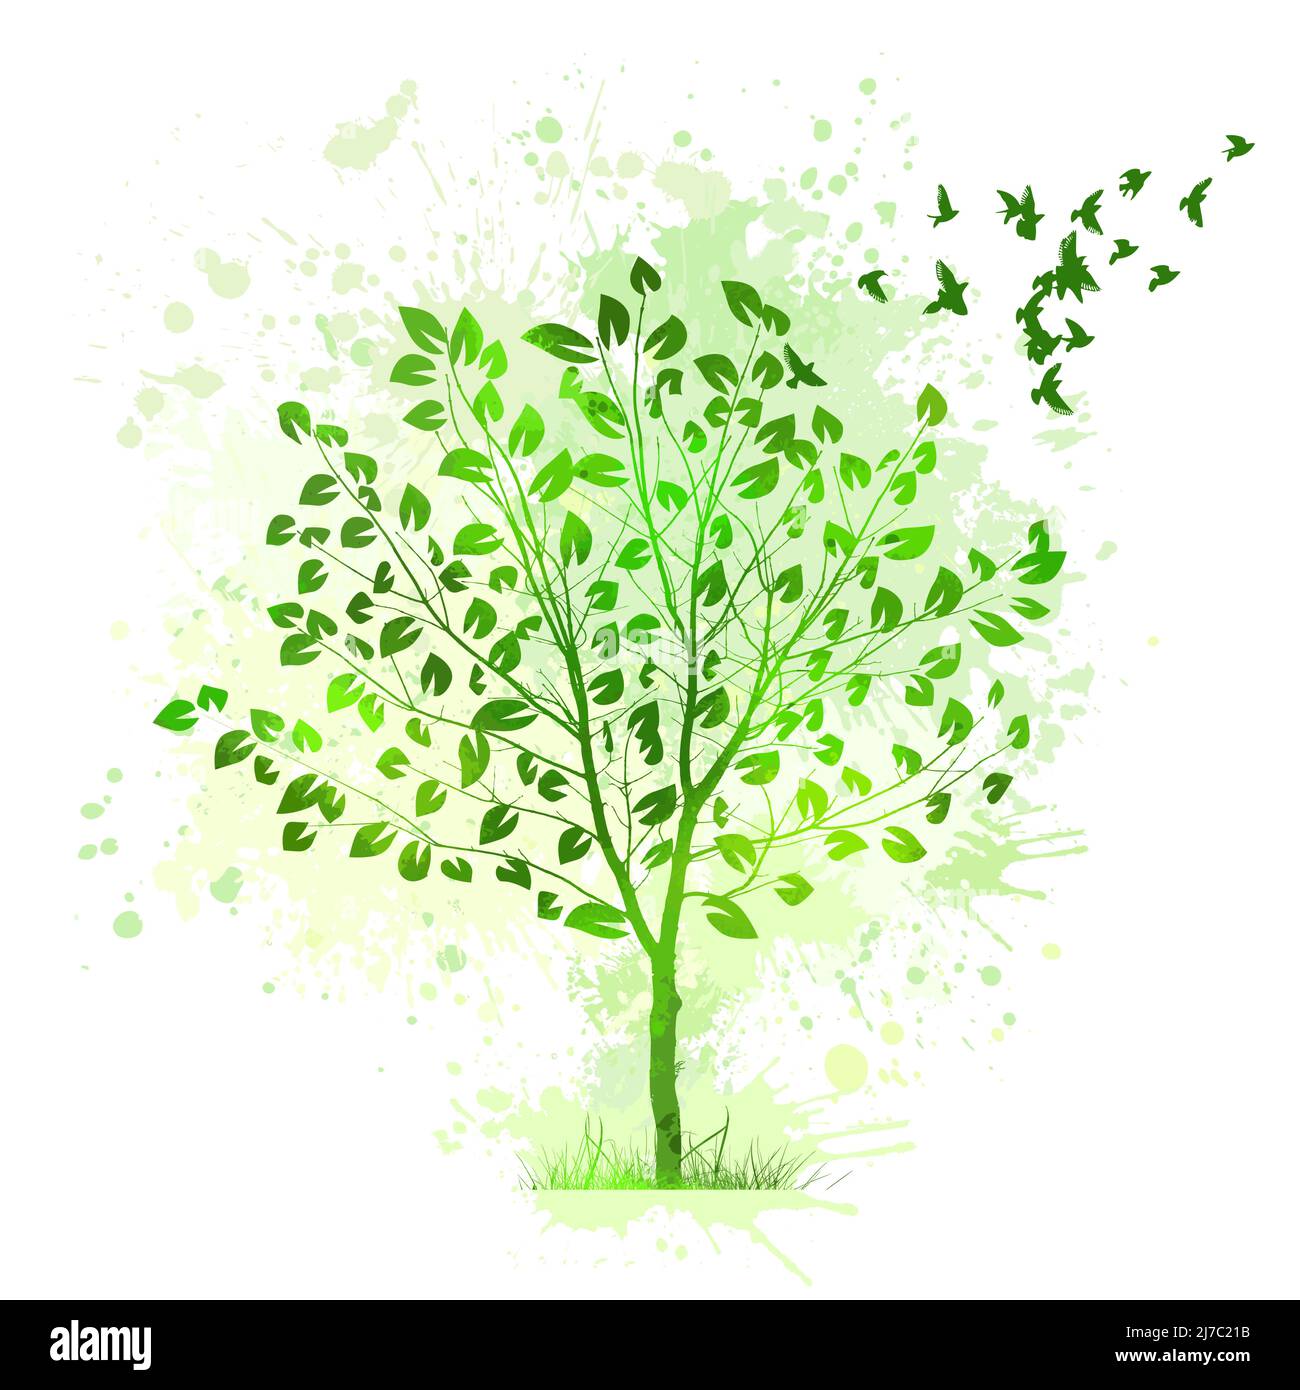 Grüner schöner Baum mit fliegenden Vögeln. Vektor-Silhouette eines Baumes. Stock Vektor